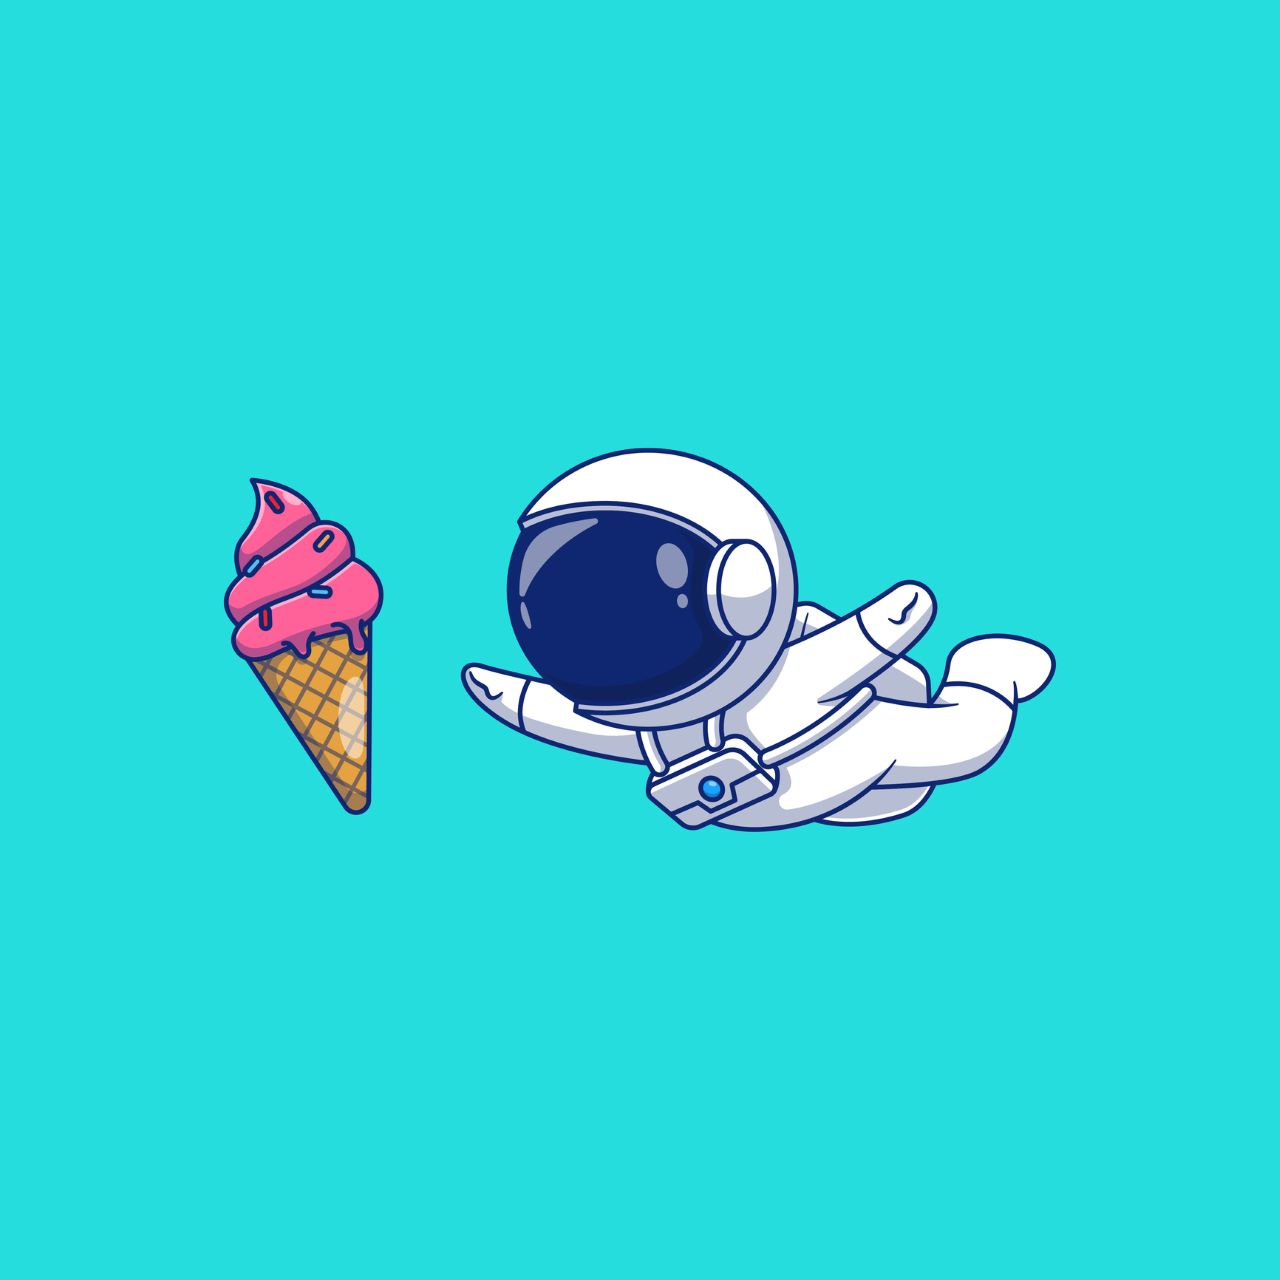 <p><strong>Какво представлява сладоледа на астронавтите?</strong>&nbsp;Има такова нещо като сладолед на астронавта, който по същество е лиофилизиран сладолед, който не изисква хладилник и няма да се разтопи. Всъщност той се появи първоначално в Космоса по време на мисията на Аполо 7 през 1968 г. Въпреки това, той просто не беше хит сред астронавтите поради липсата на вкус и ронлив състав. По ирония на съдбата сладоледът на астронавтите стана популярен на Земята, особено в научните музеи и магазините за подаръци по целия свят.&nbsp;</p>